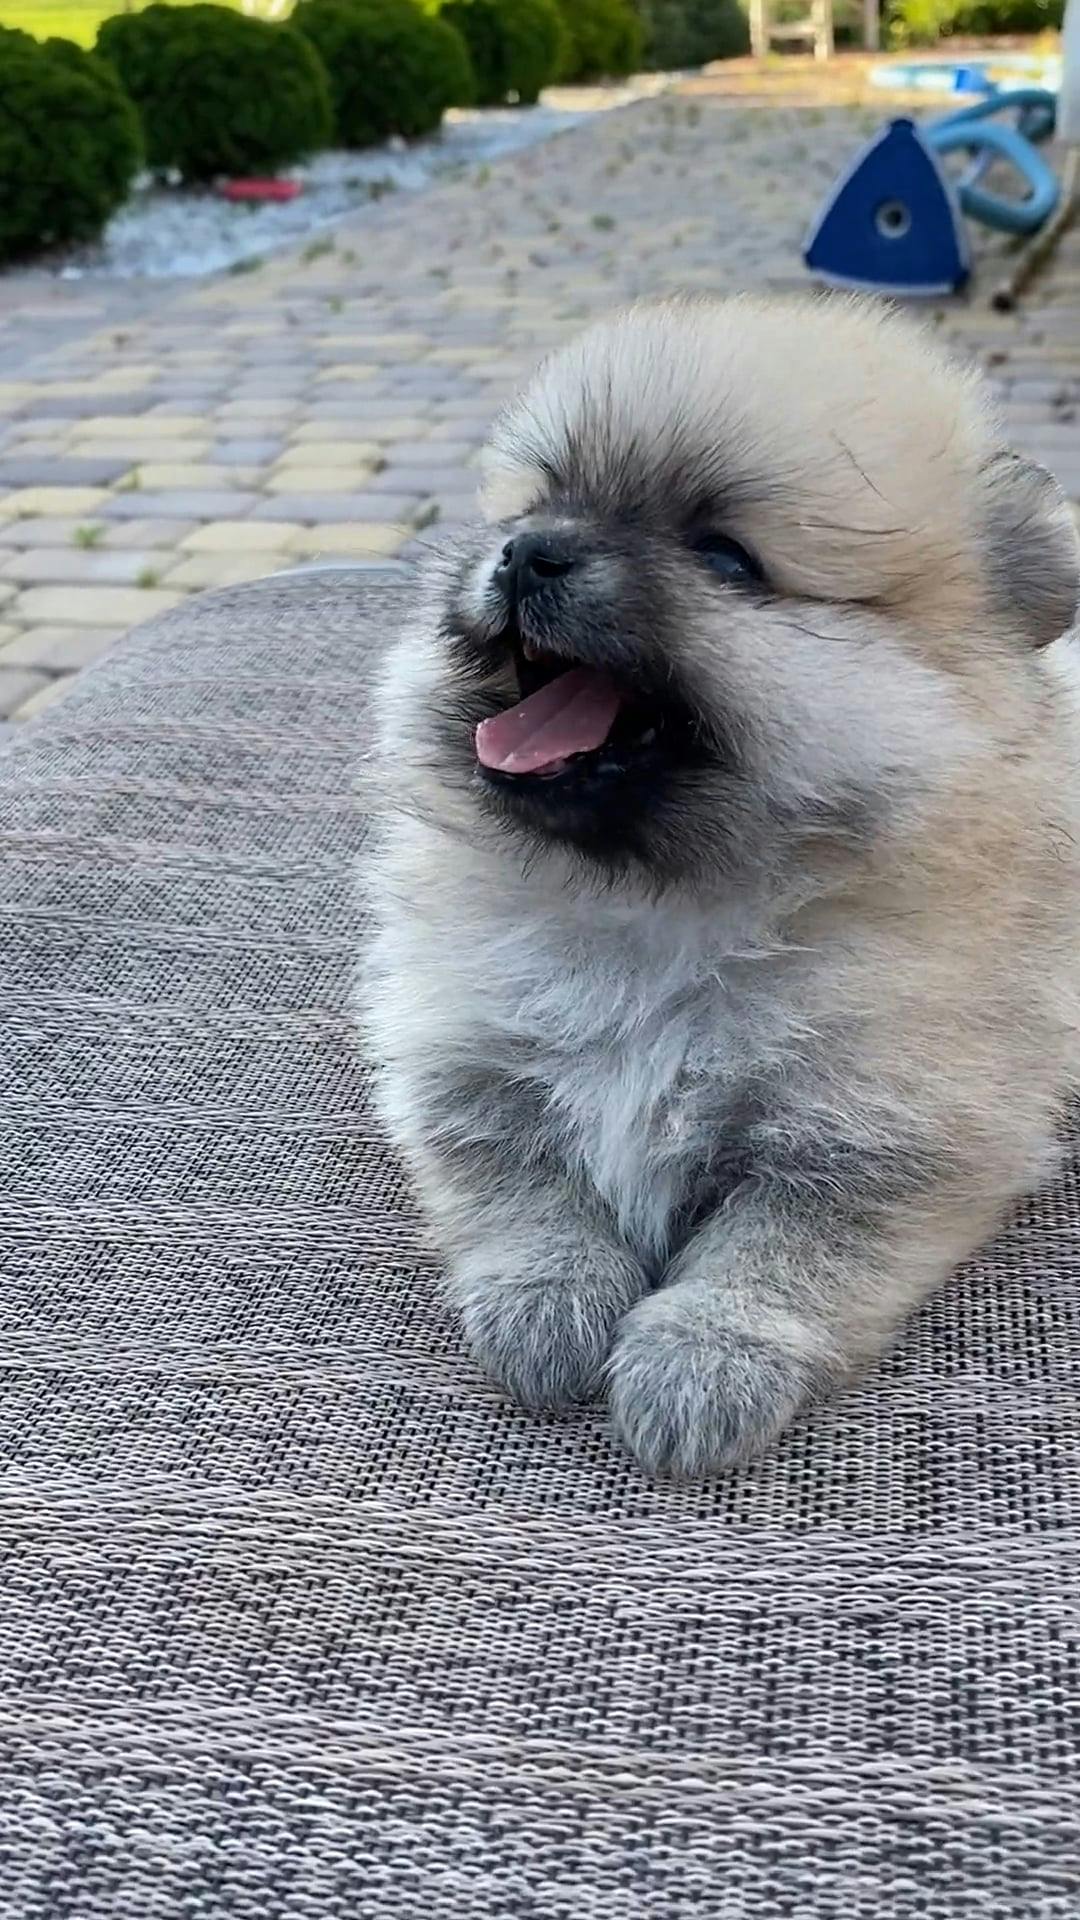 Cute Dog